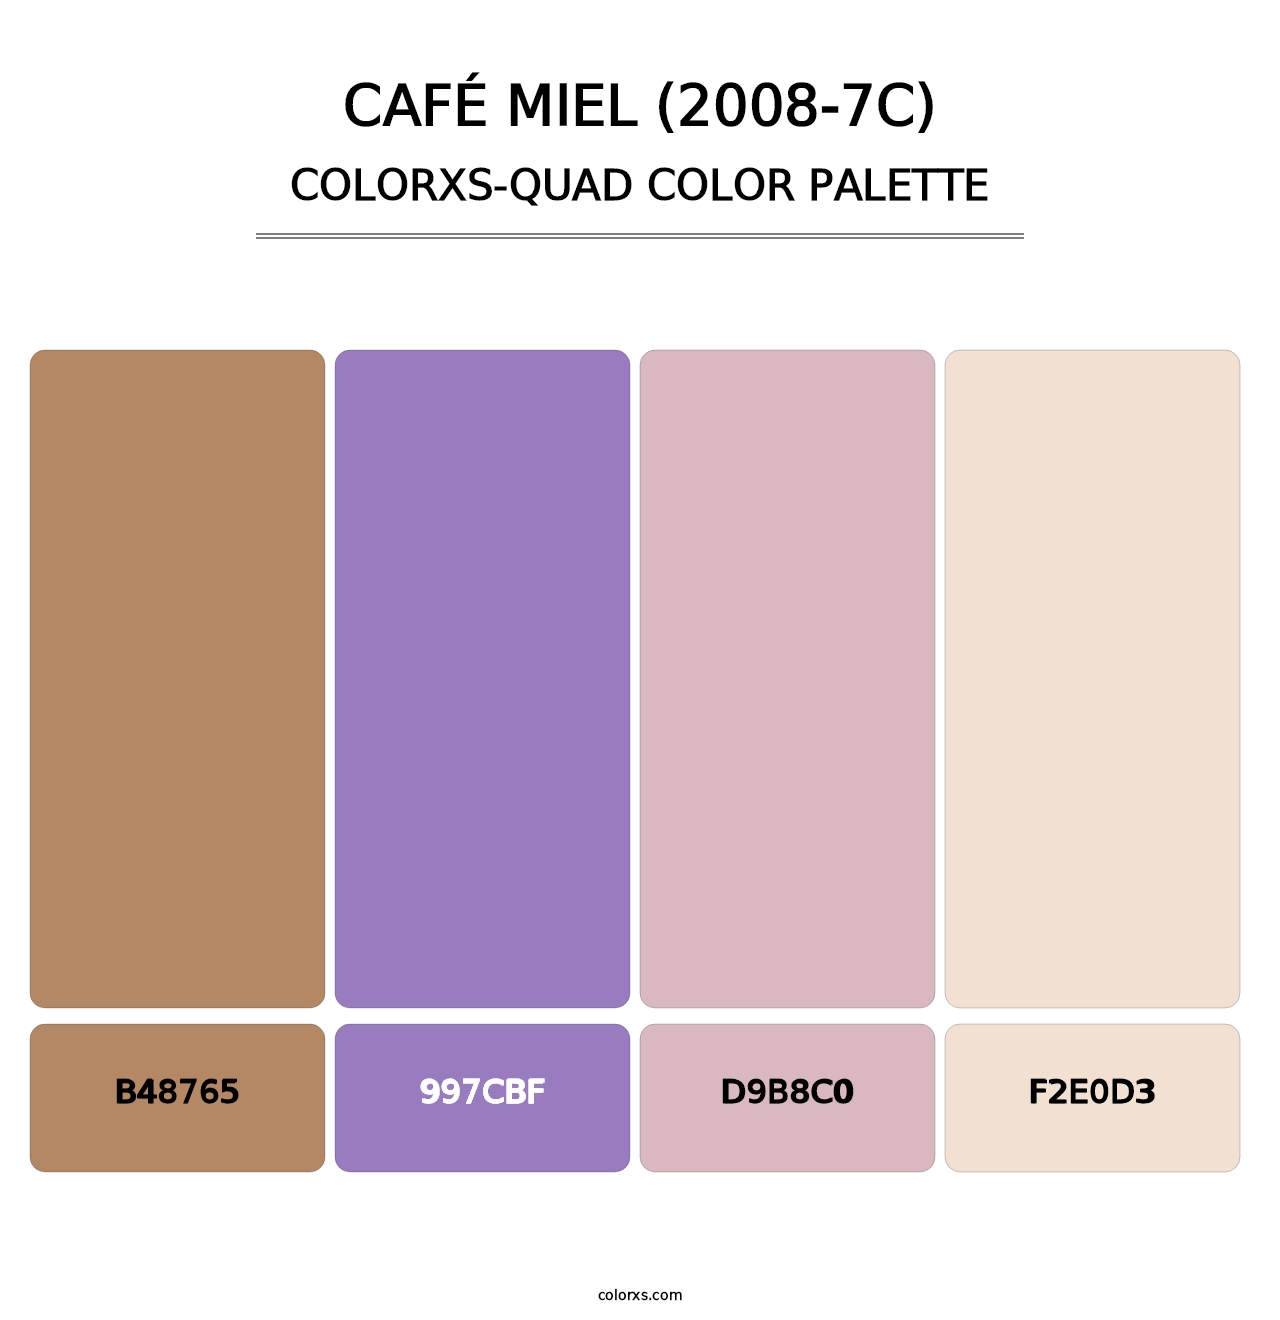 Café Miel (2008-7C) - Colorxs Quad Palette